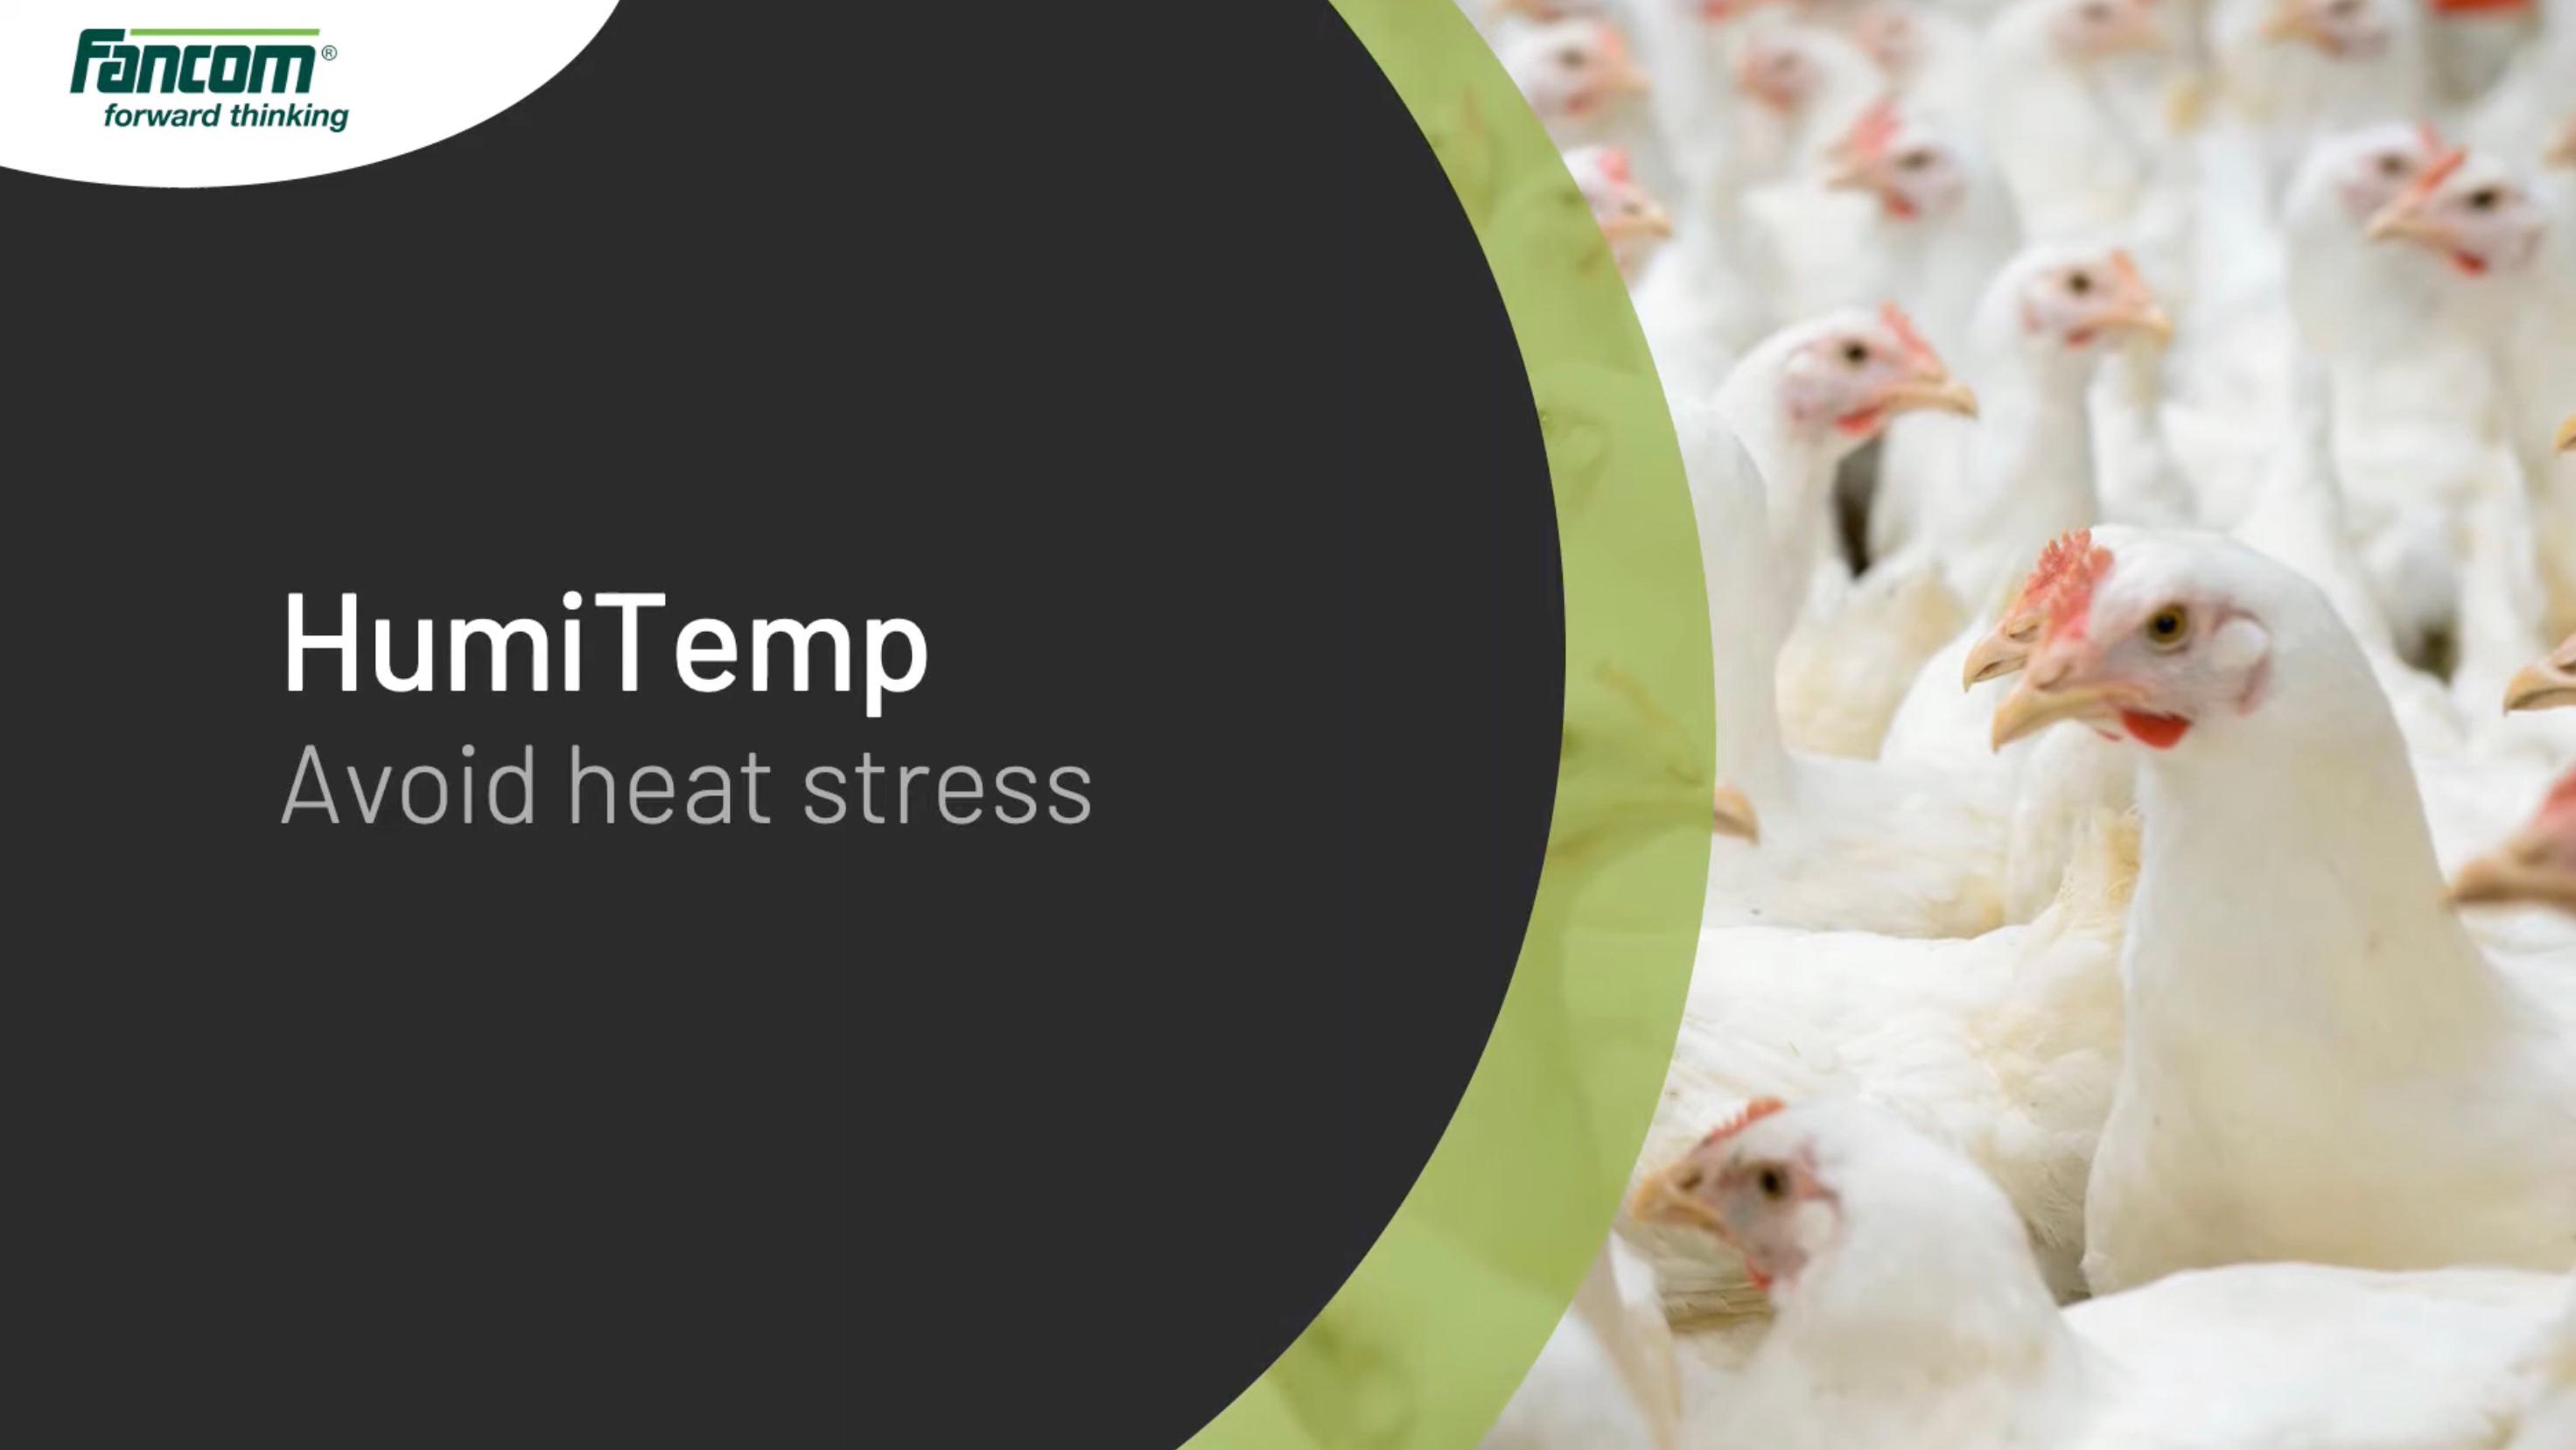 Humitemp - Avoid heat stress